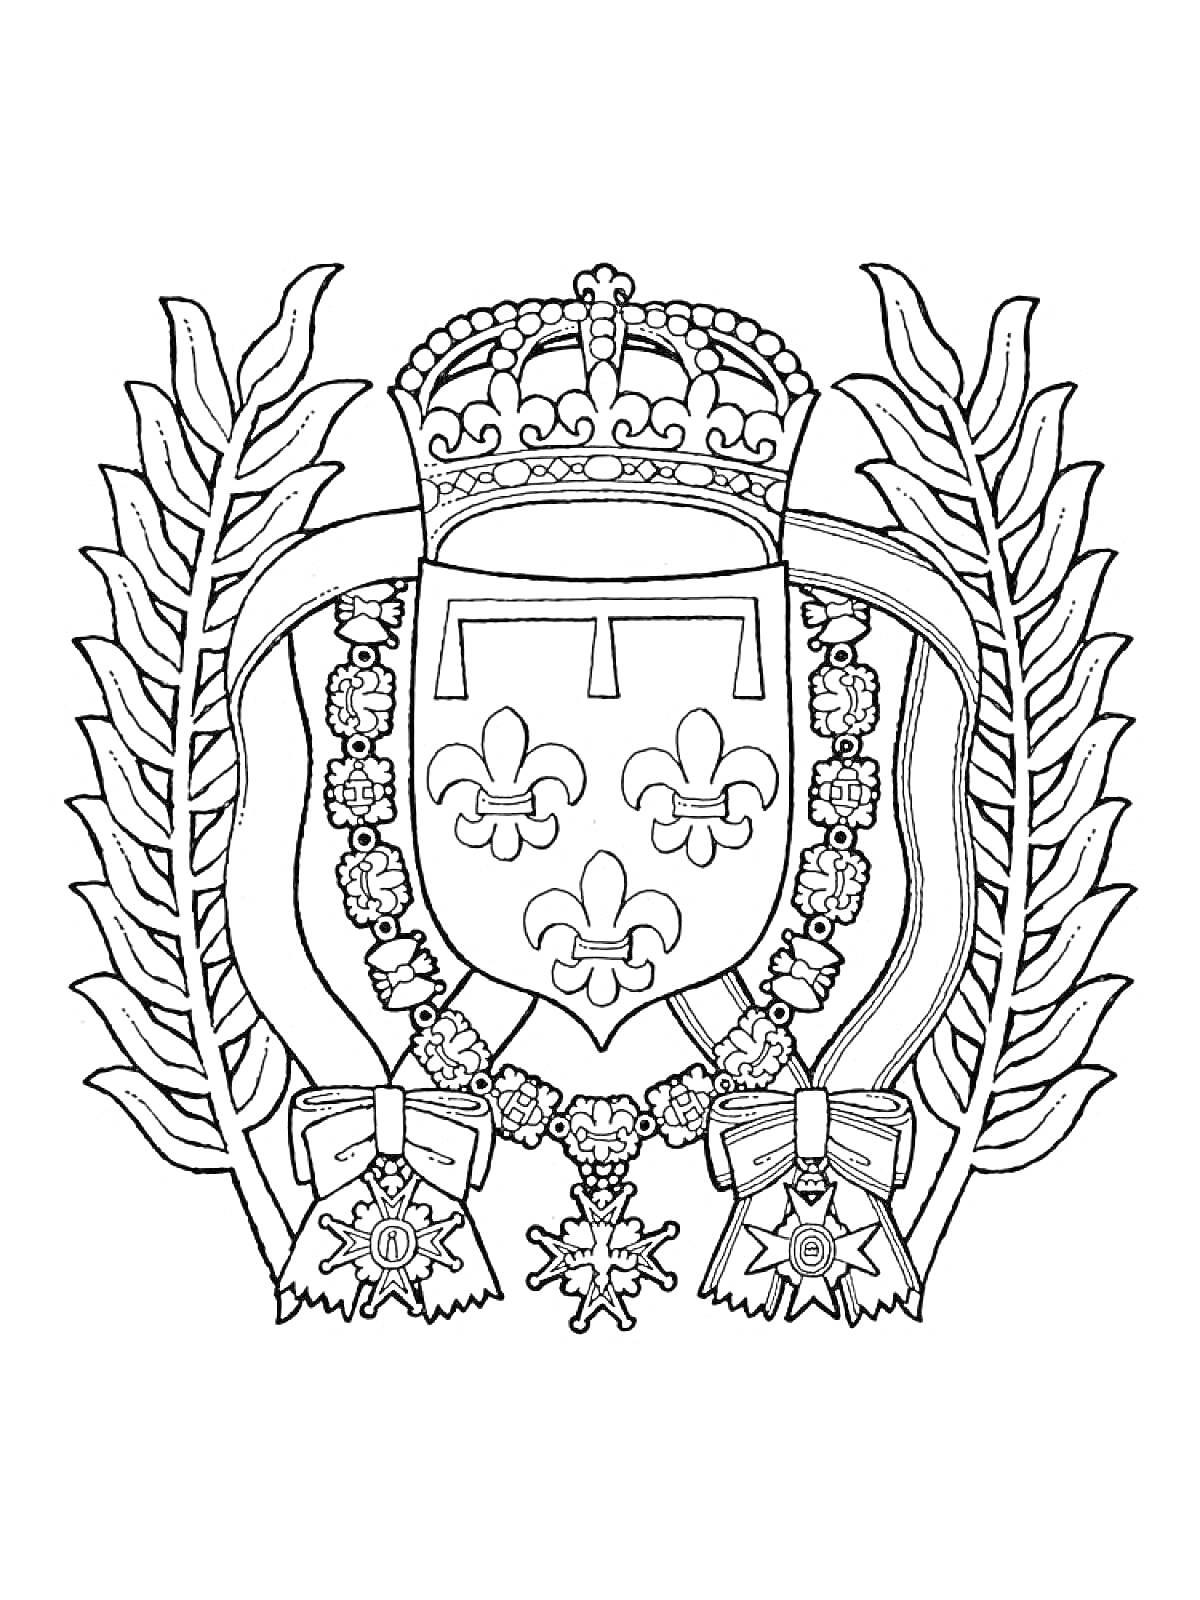 Раскраска Герб с короной наверху, щитом с тремя лилиями в центре, окруженными лавровыми листьями и орденами